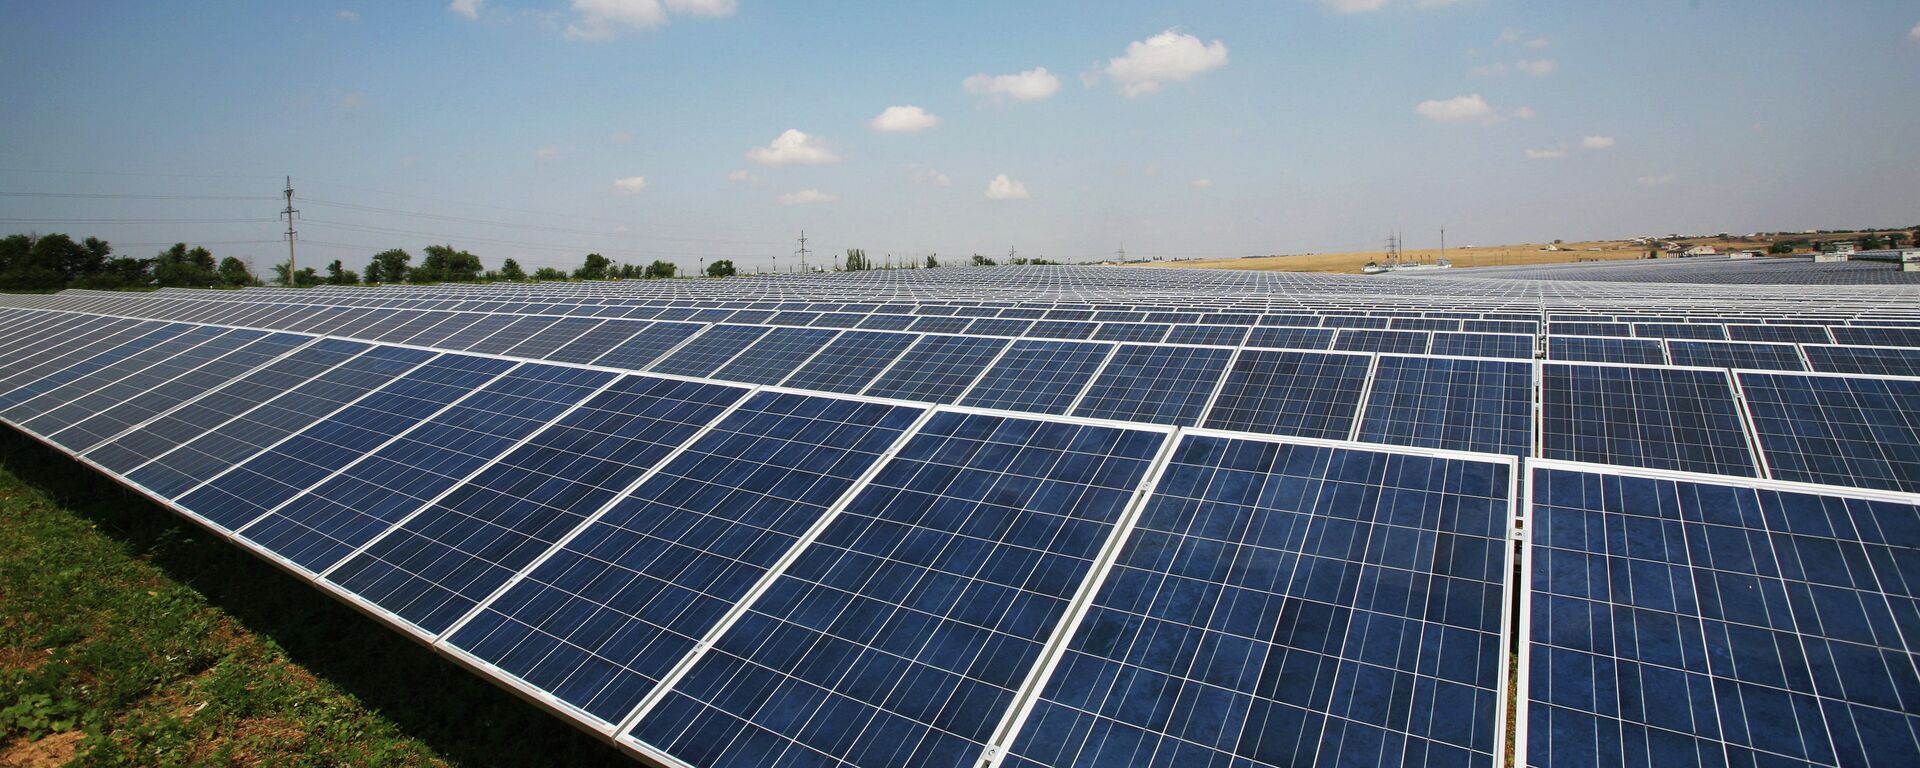 بانک توسعه آسیایی برای نیروگاه برق خورشیدی کابل 44 میلیون دالر کمک می کند - اسپوتنیک افغانستان  , 1920, 26.11.2017